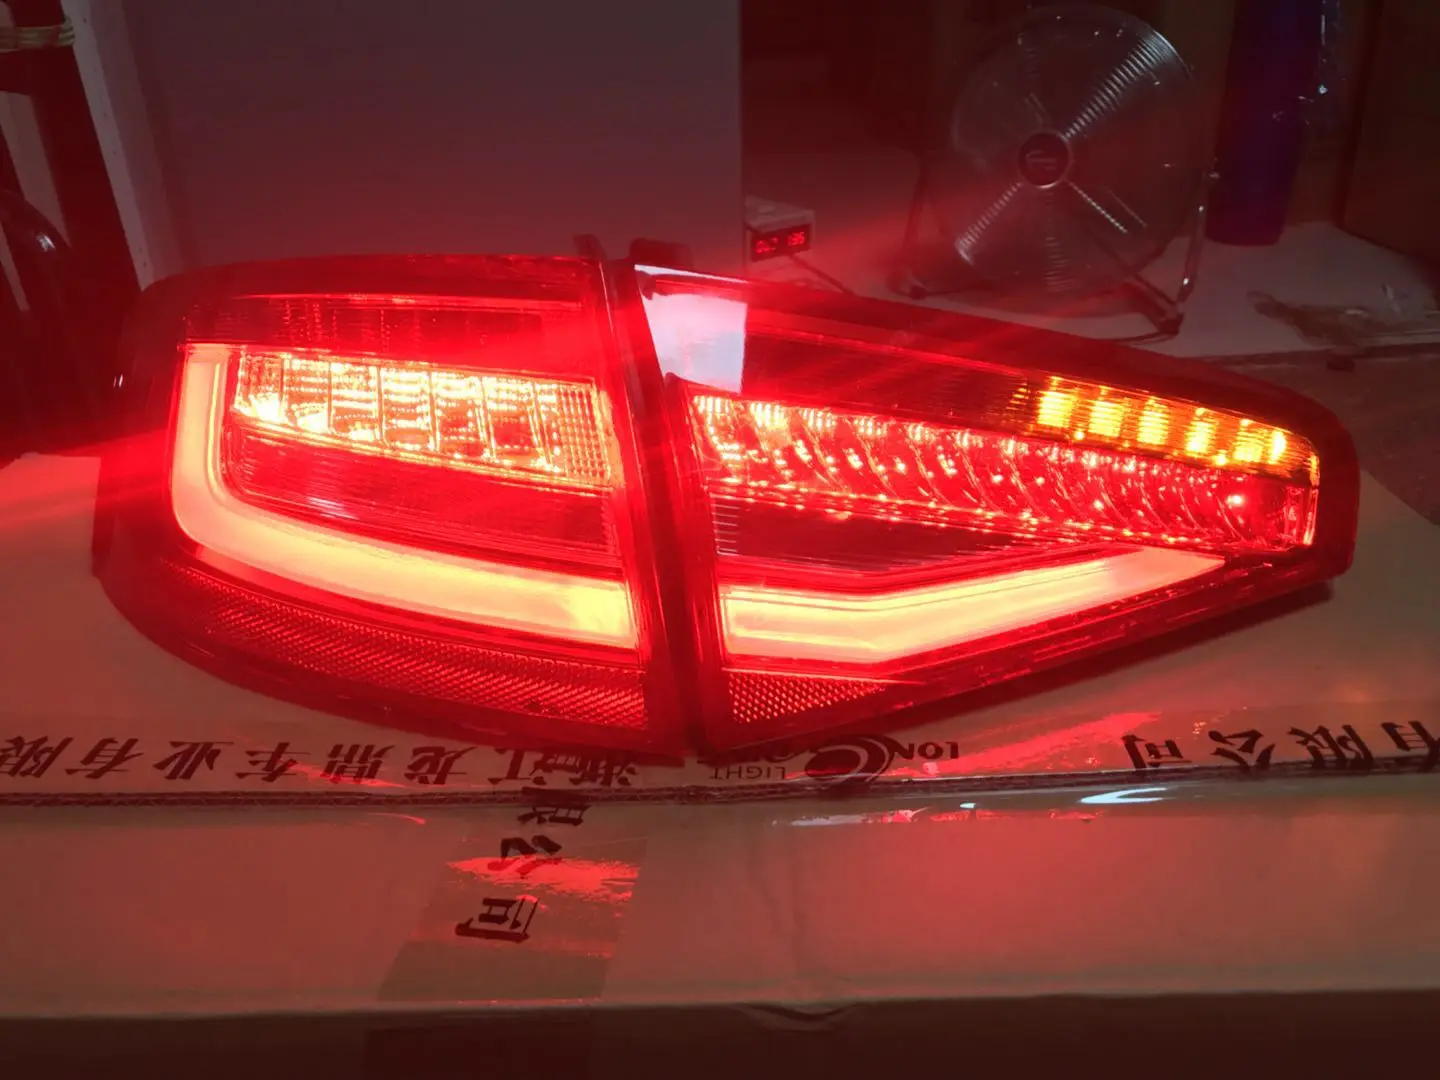 Автомобильный Стайлинг задний фонарь для Audi A4 светодиодный задние фонари 2013- для A4 b8 светодиодные задние фары DRL+ тормоз+ Парк+ Динамический сигнал поворота